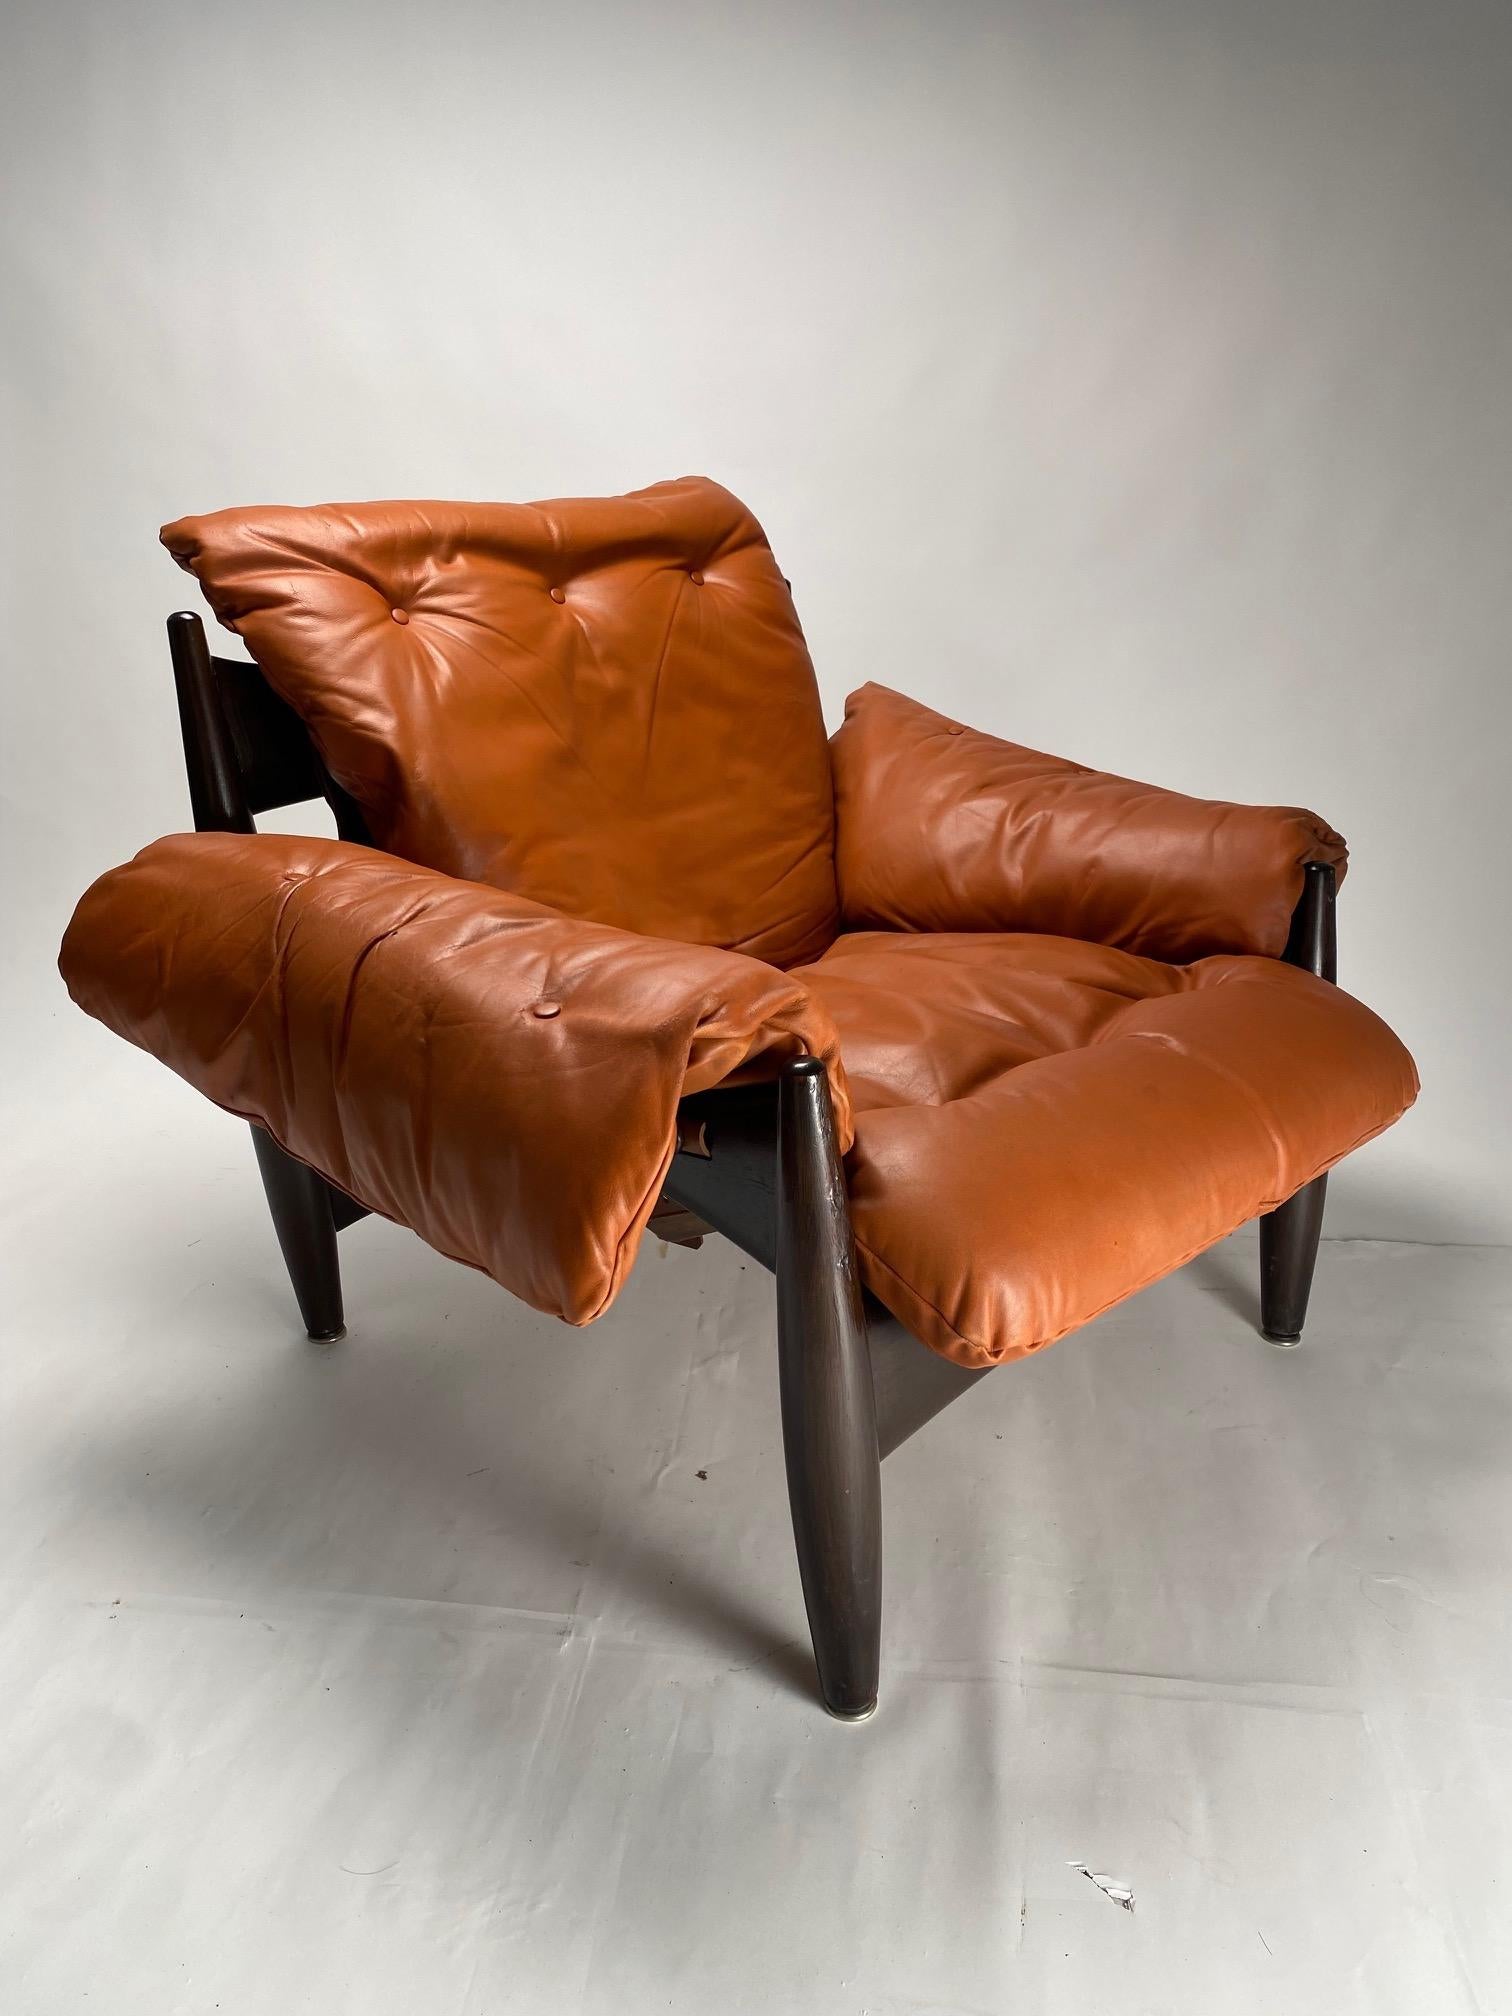 Véritable icône du design brésilien du milieu du siècle, le fauteuil Sheriff est l'une des œuvres les plus importantes et les plus appréciées du designer brésilien Sergio Rodrigues. 

Extrêmement confortable, la structure en bois massif soutient un